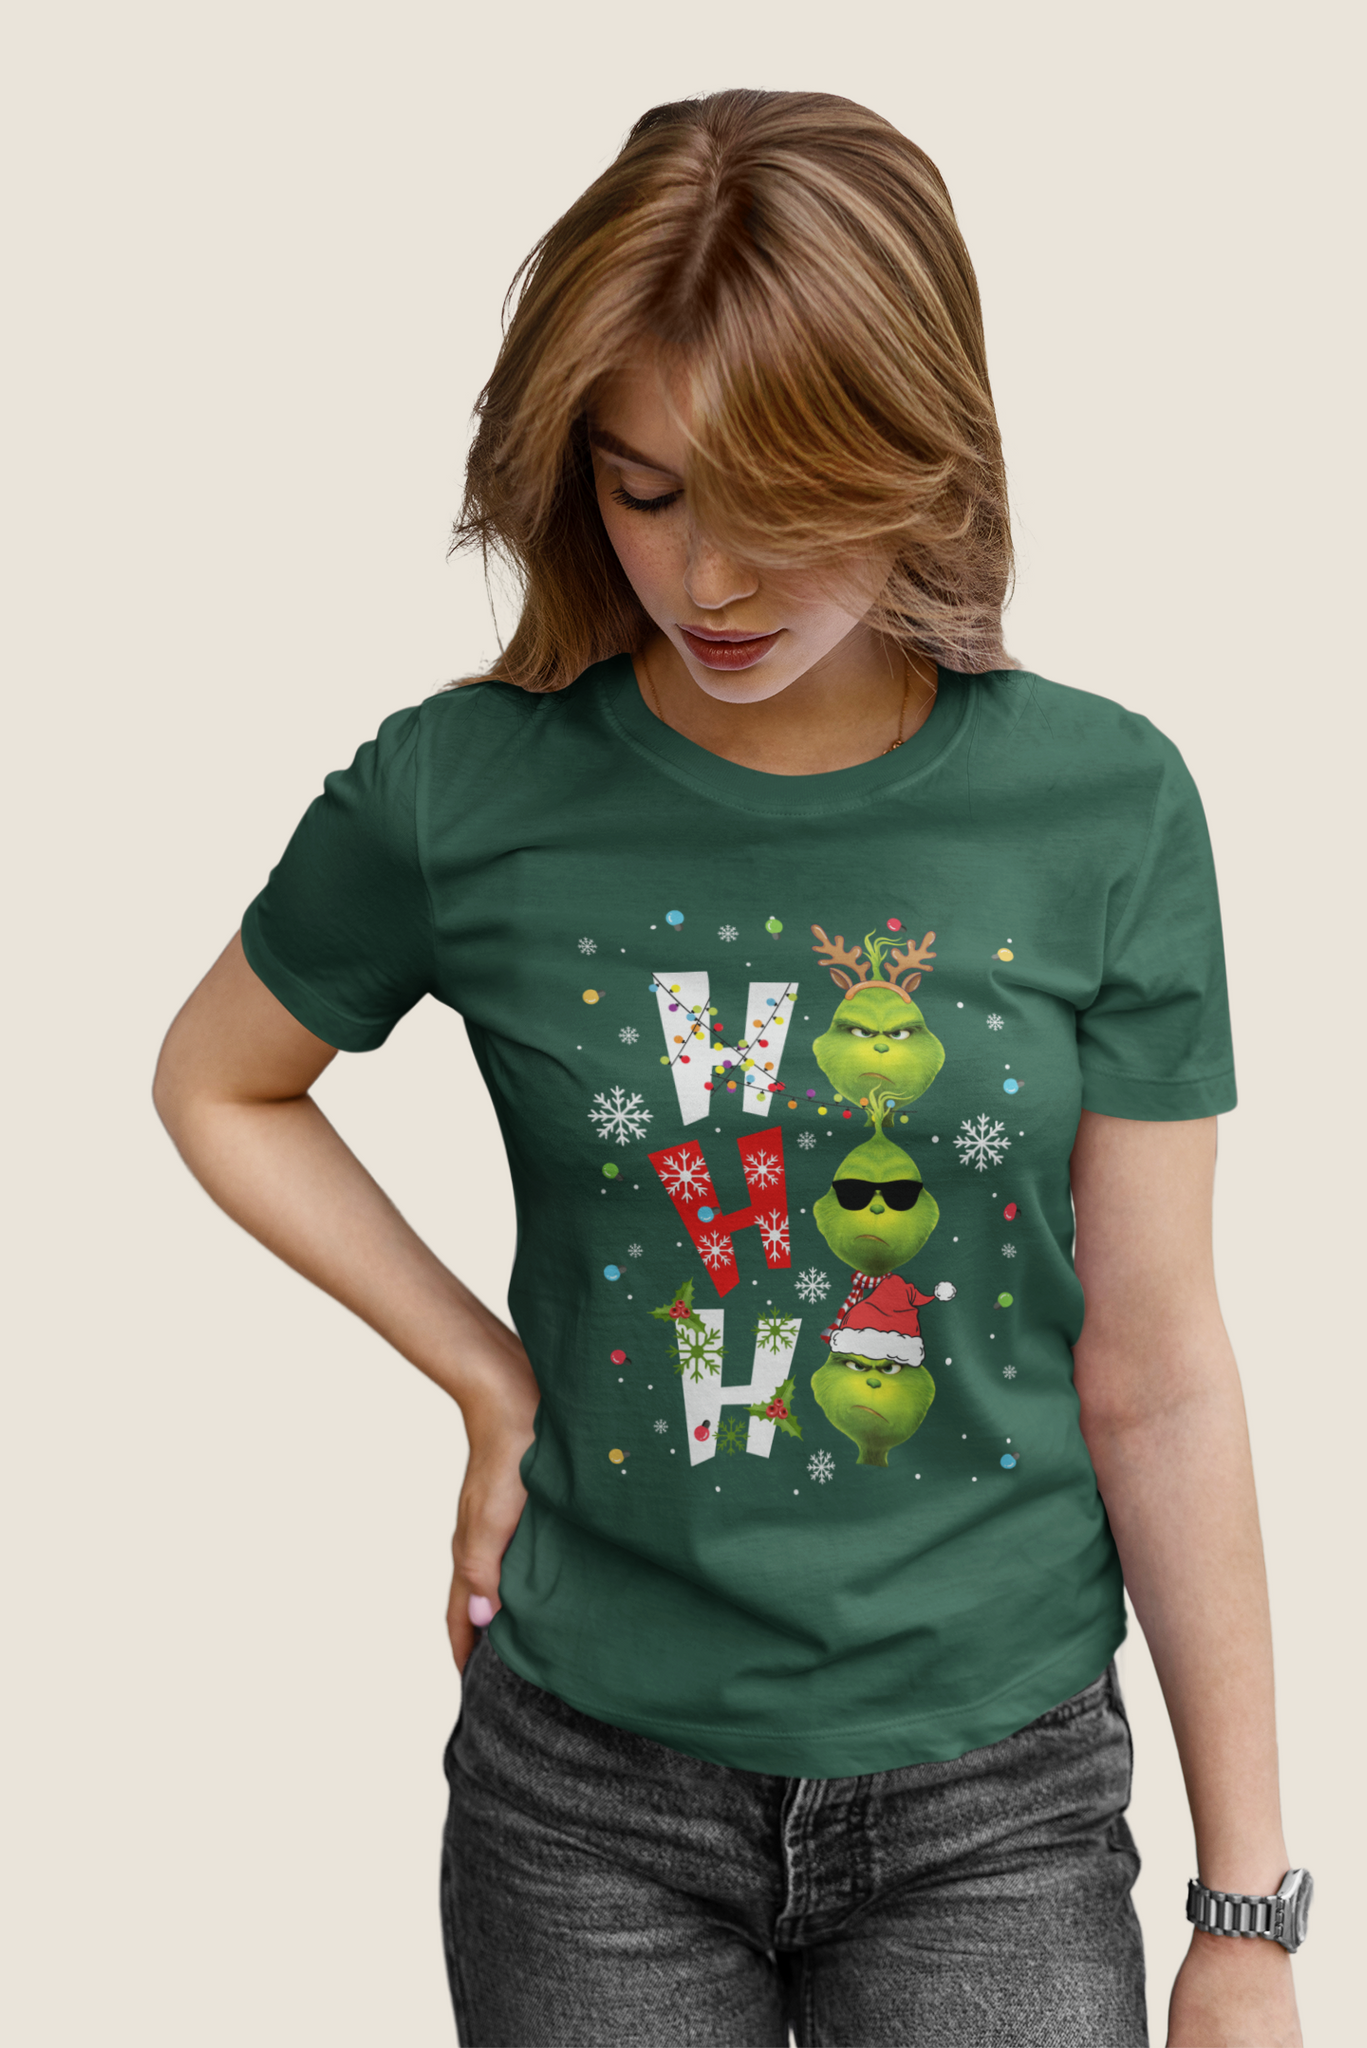 Grinch T Shirt, Ho Ho Ho Tshirt, Christmas Movie Shirt, Christmas Gifts